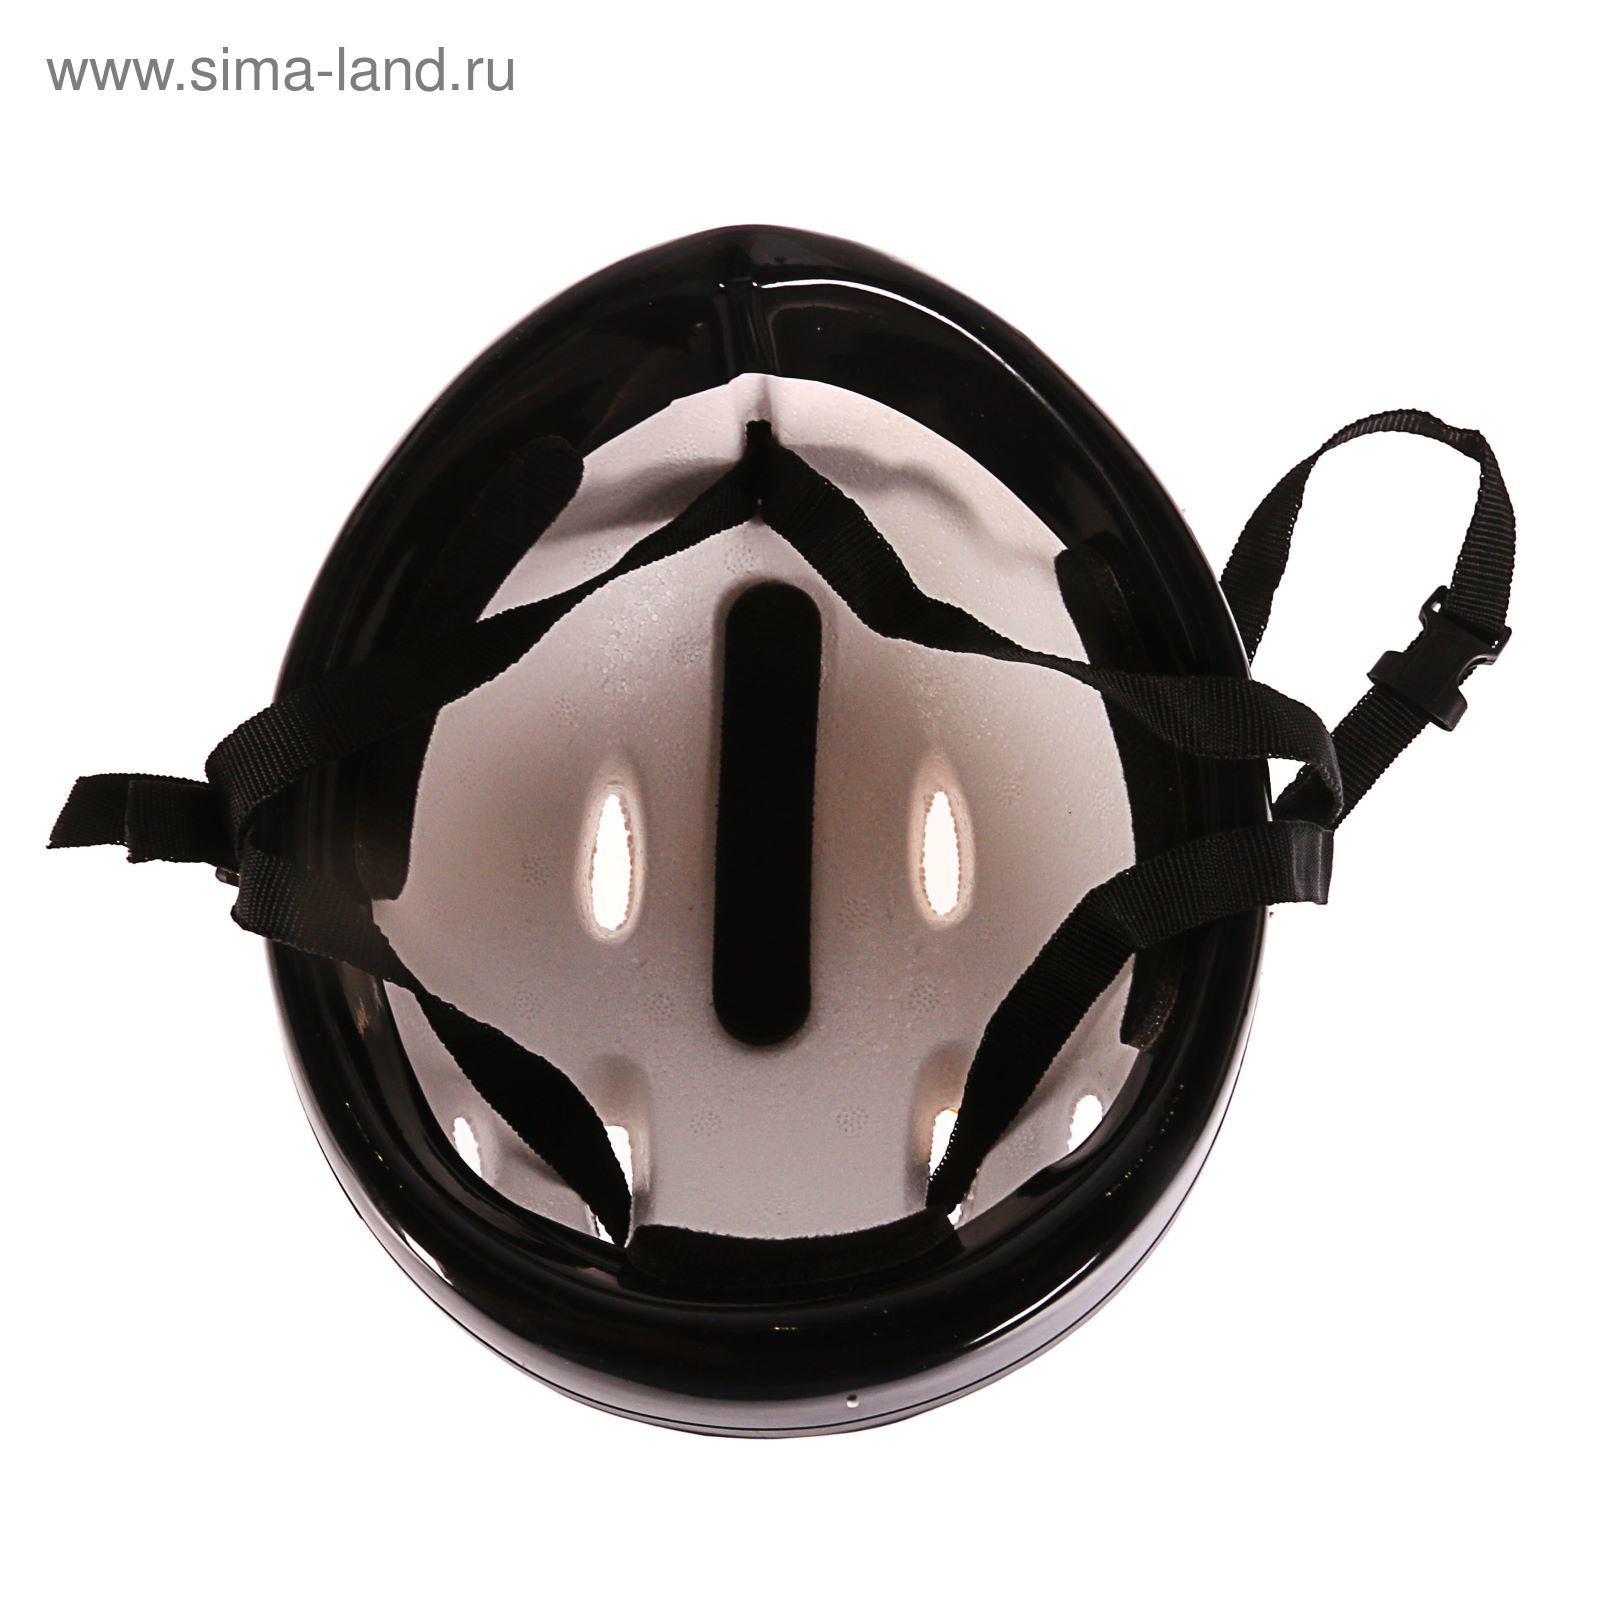 Шлем защитный детский OT-H6, размер S (52-54 см), цвет: черный